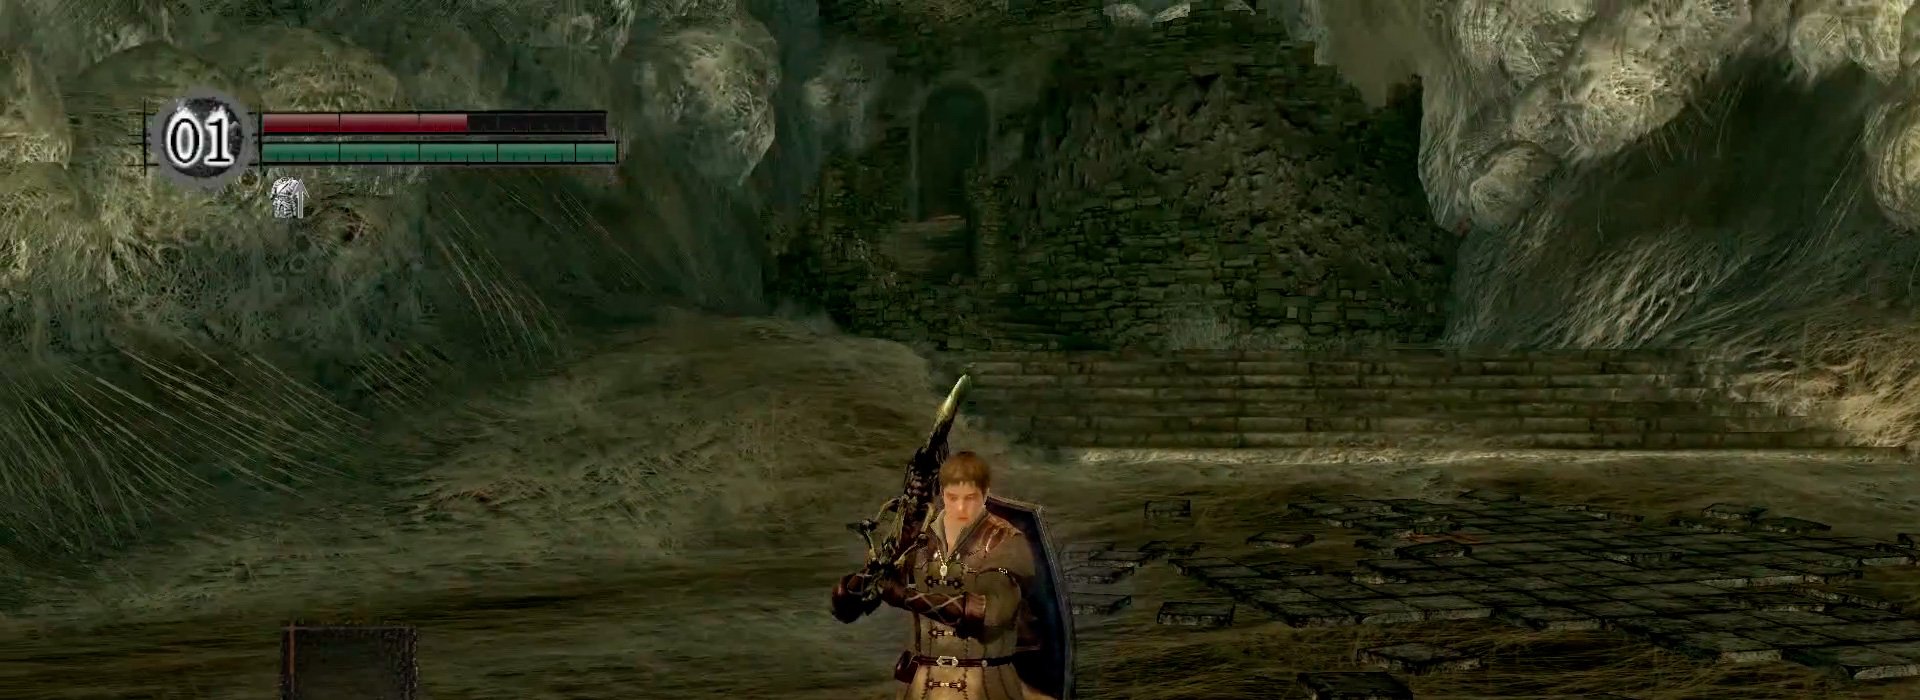 Локации в Dark Souls - Владение Квилег